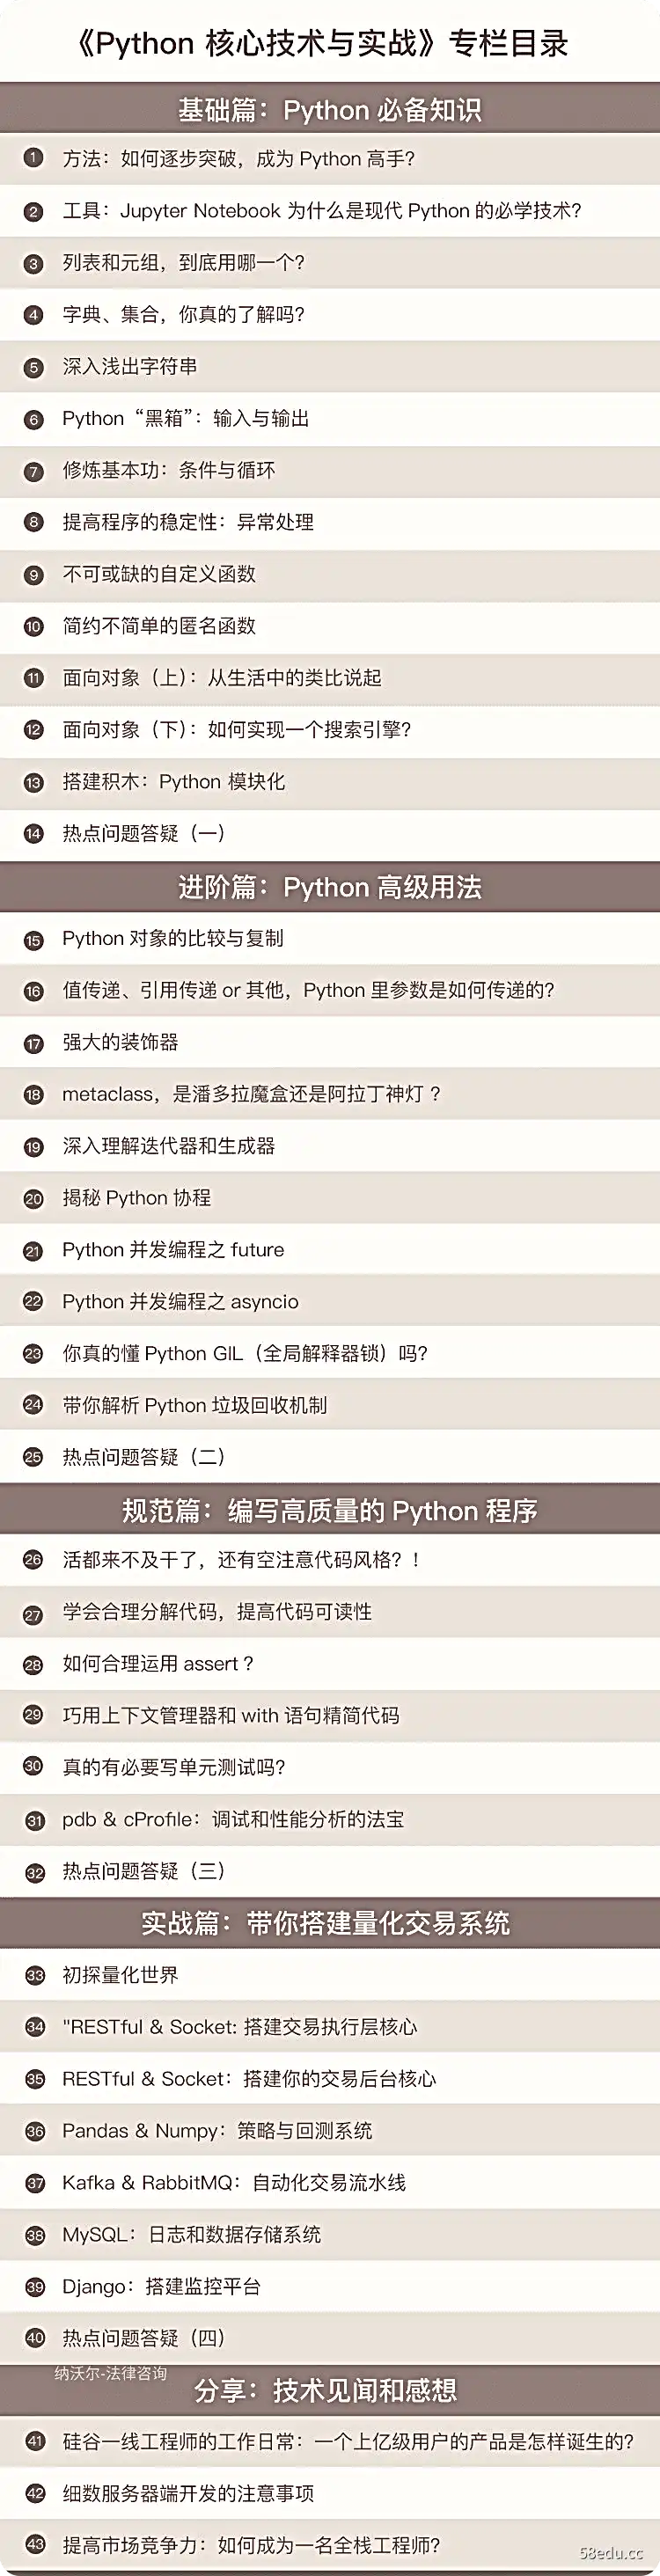 极客时间《Python核心技术与实战》系统提升你的 Python能力插图